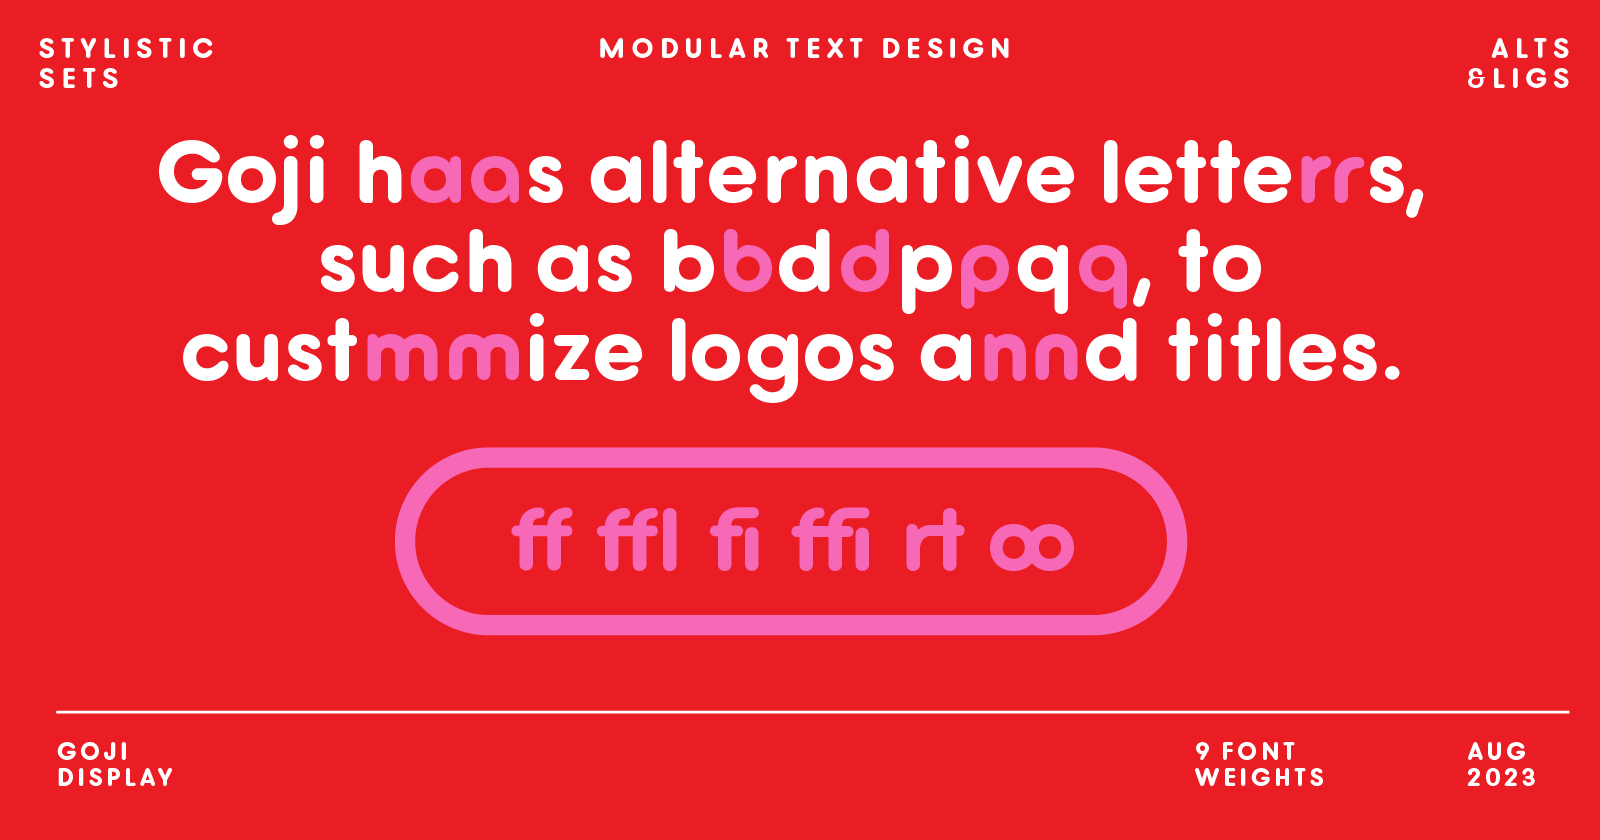 Alternate letter designs